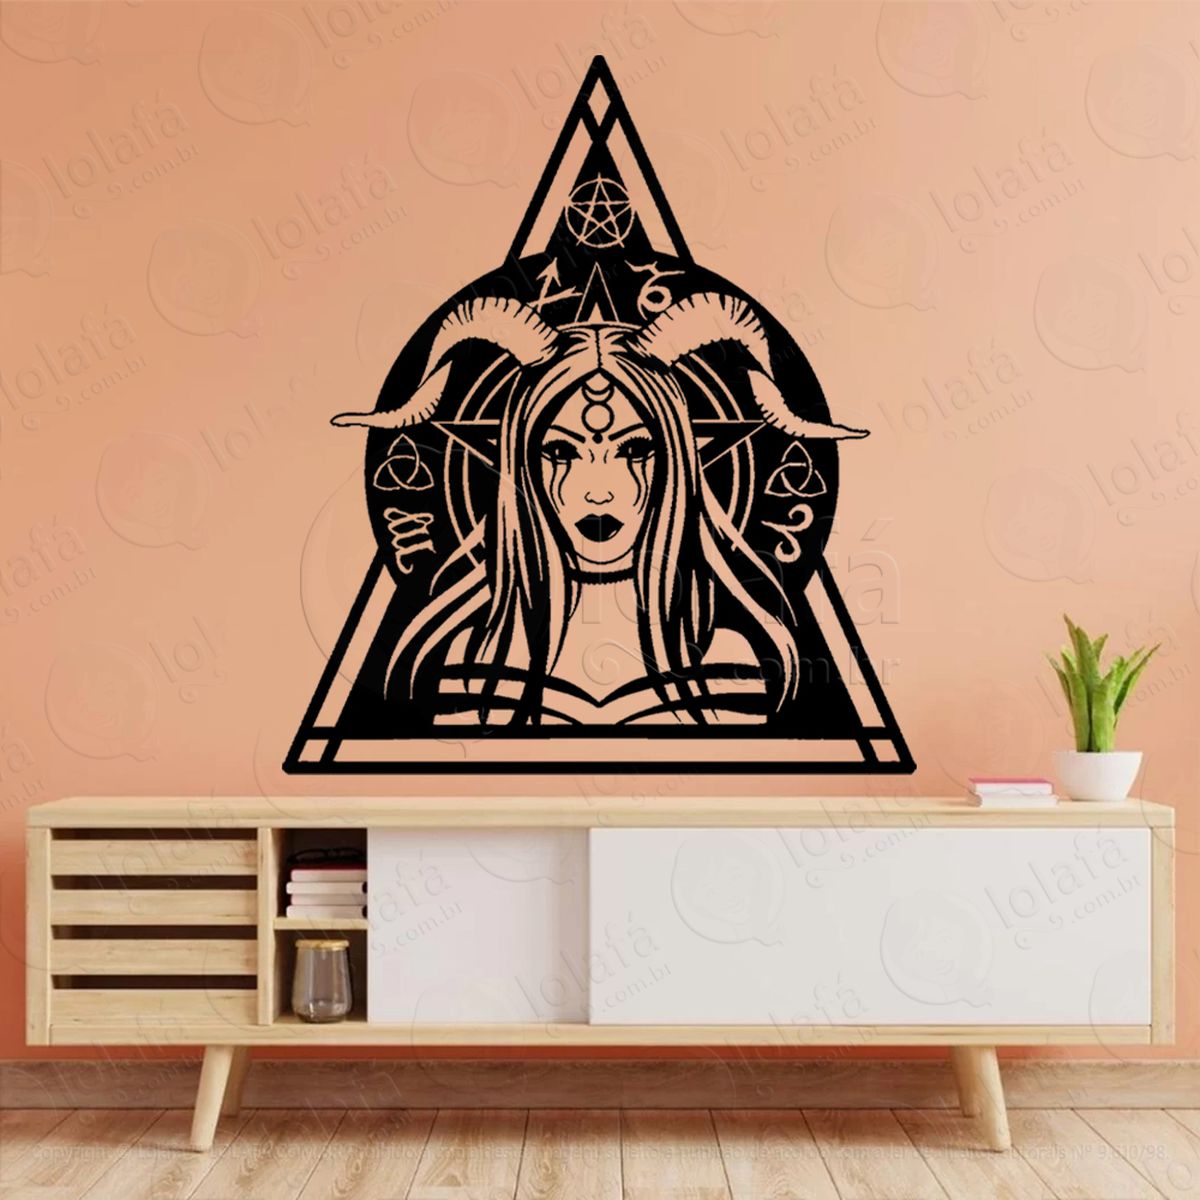 witchcraft bruxaria altar adesivo de parede decorativo para casa, sala, quarto, vidro e altar ocultista - mod:322